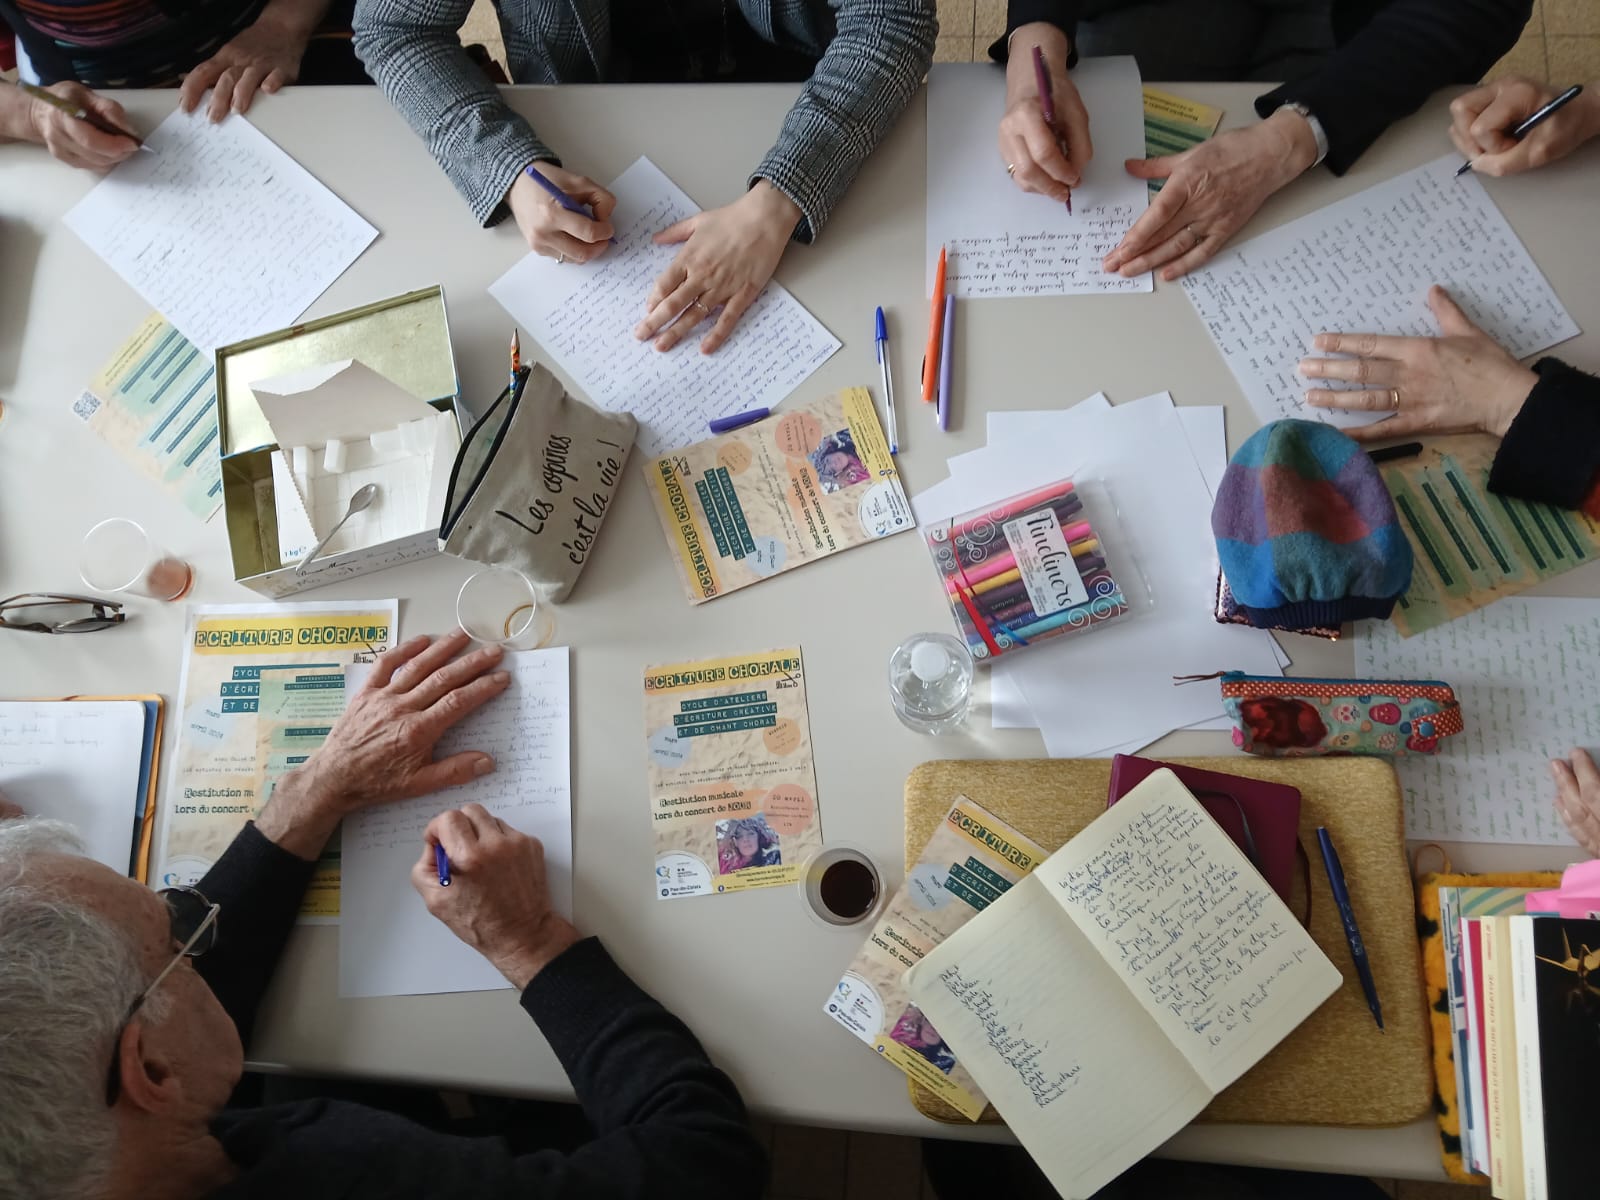 18 mars - Atelier d’écriture créative, bibliothèque d’Ambleteuse.